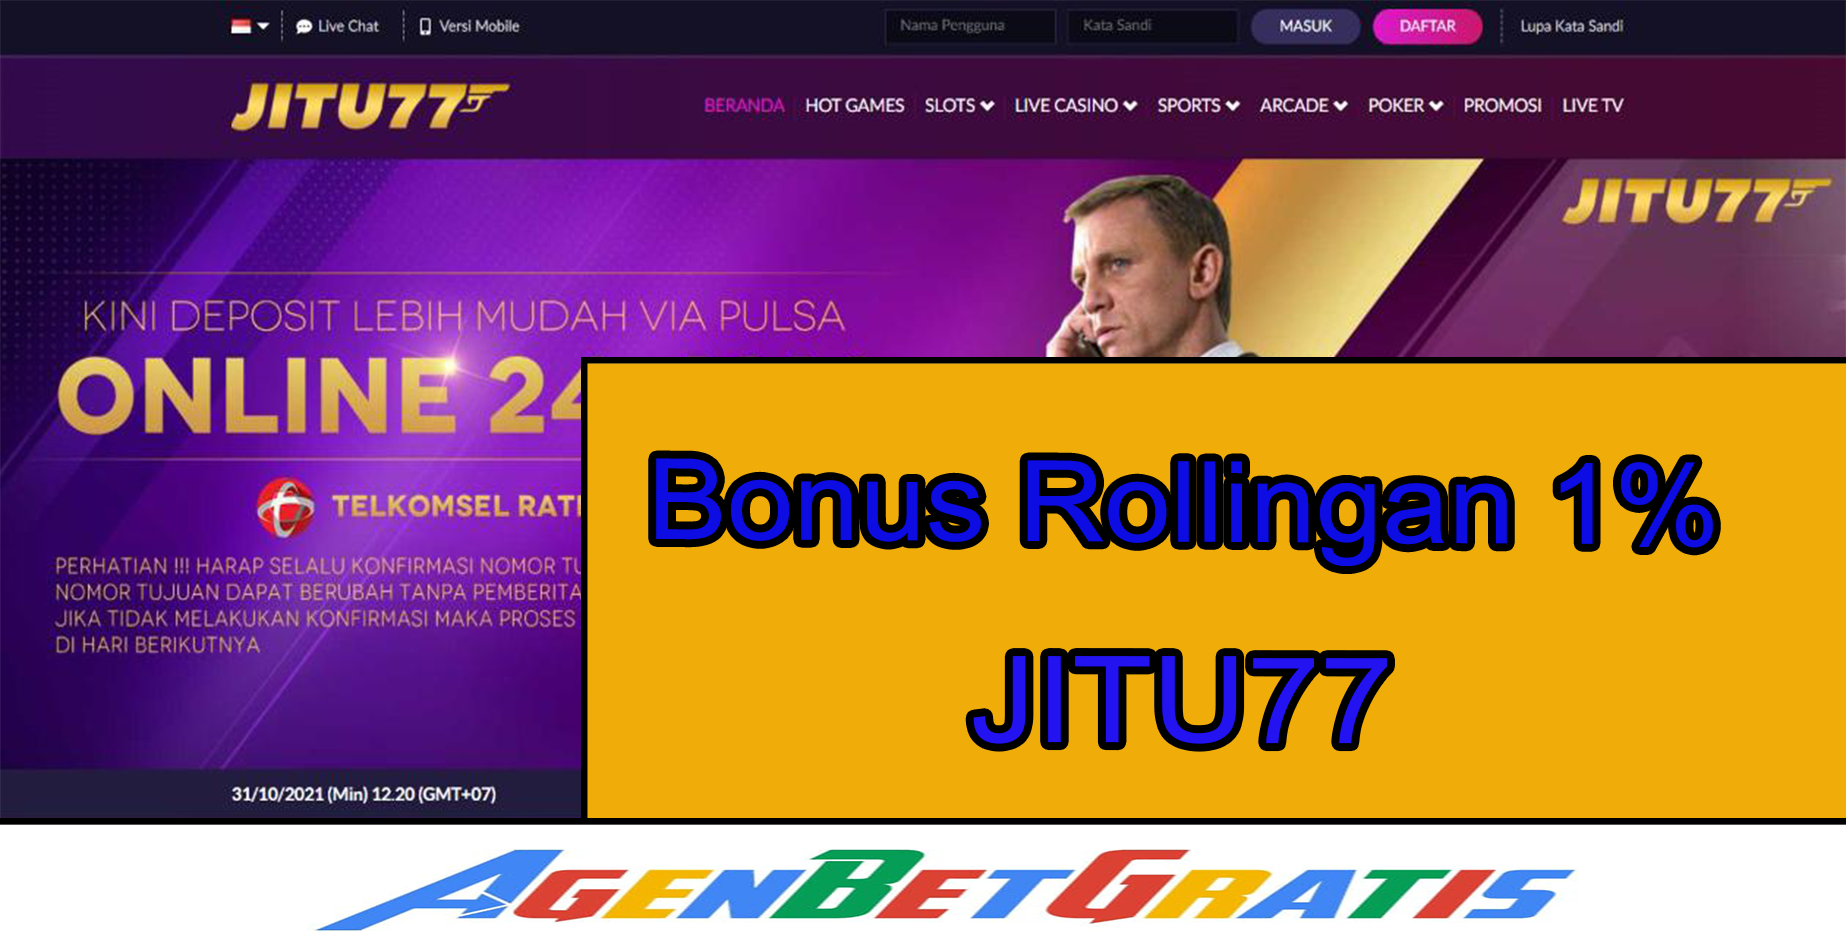 JITU77 - Bonus Rollingan 1%